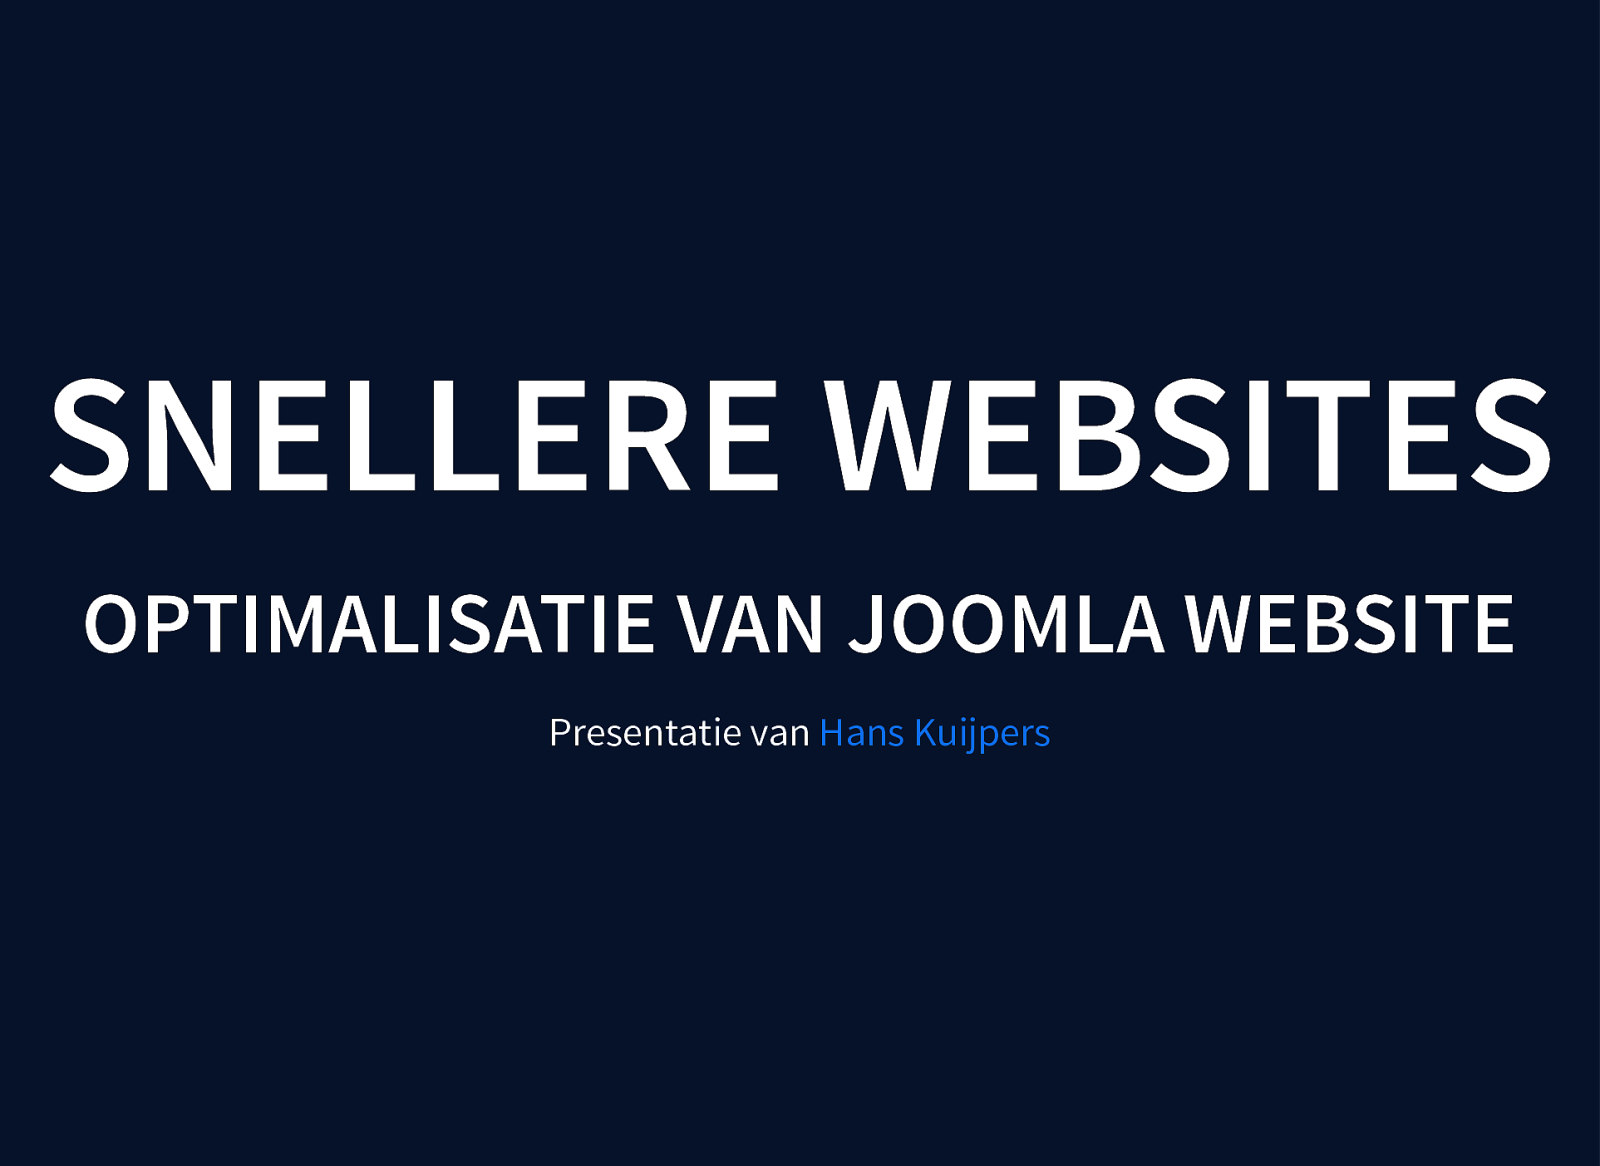 Joomla Website optimaliseren - jug073 augustus 2018